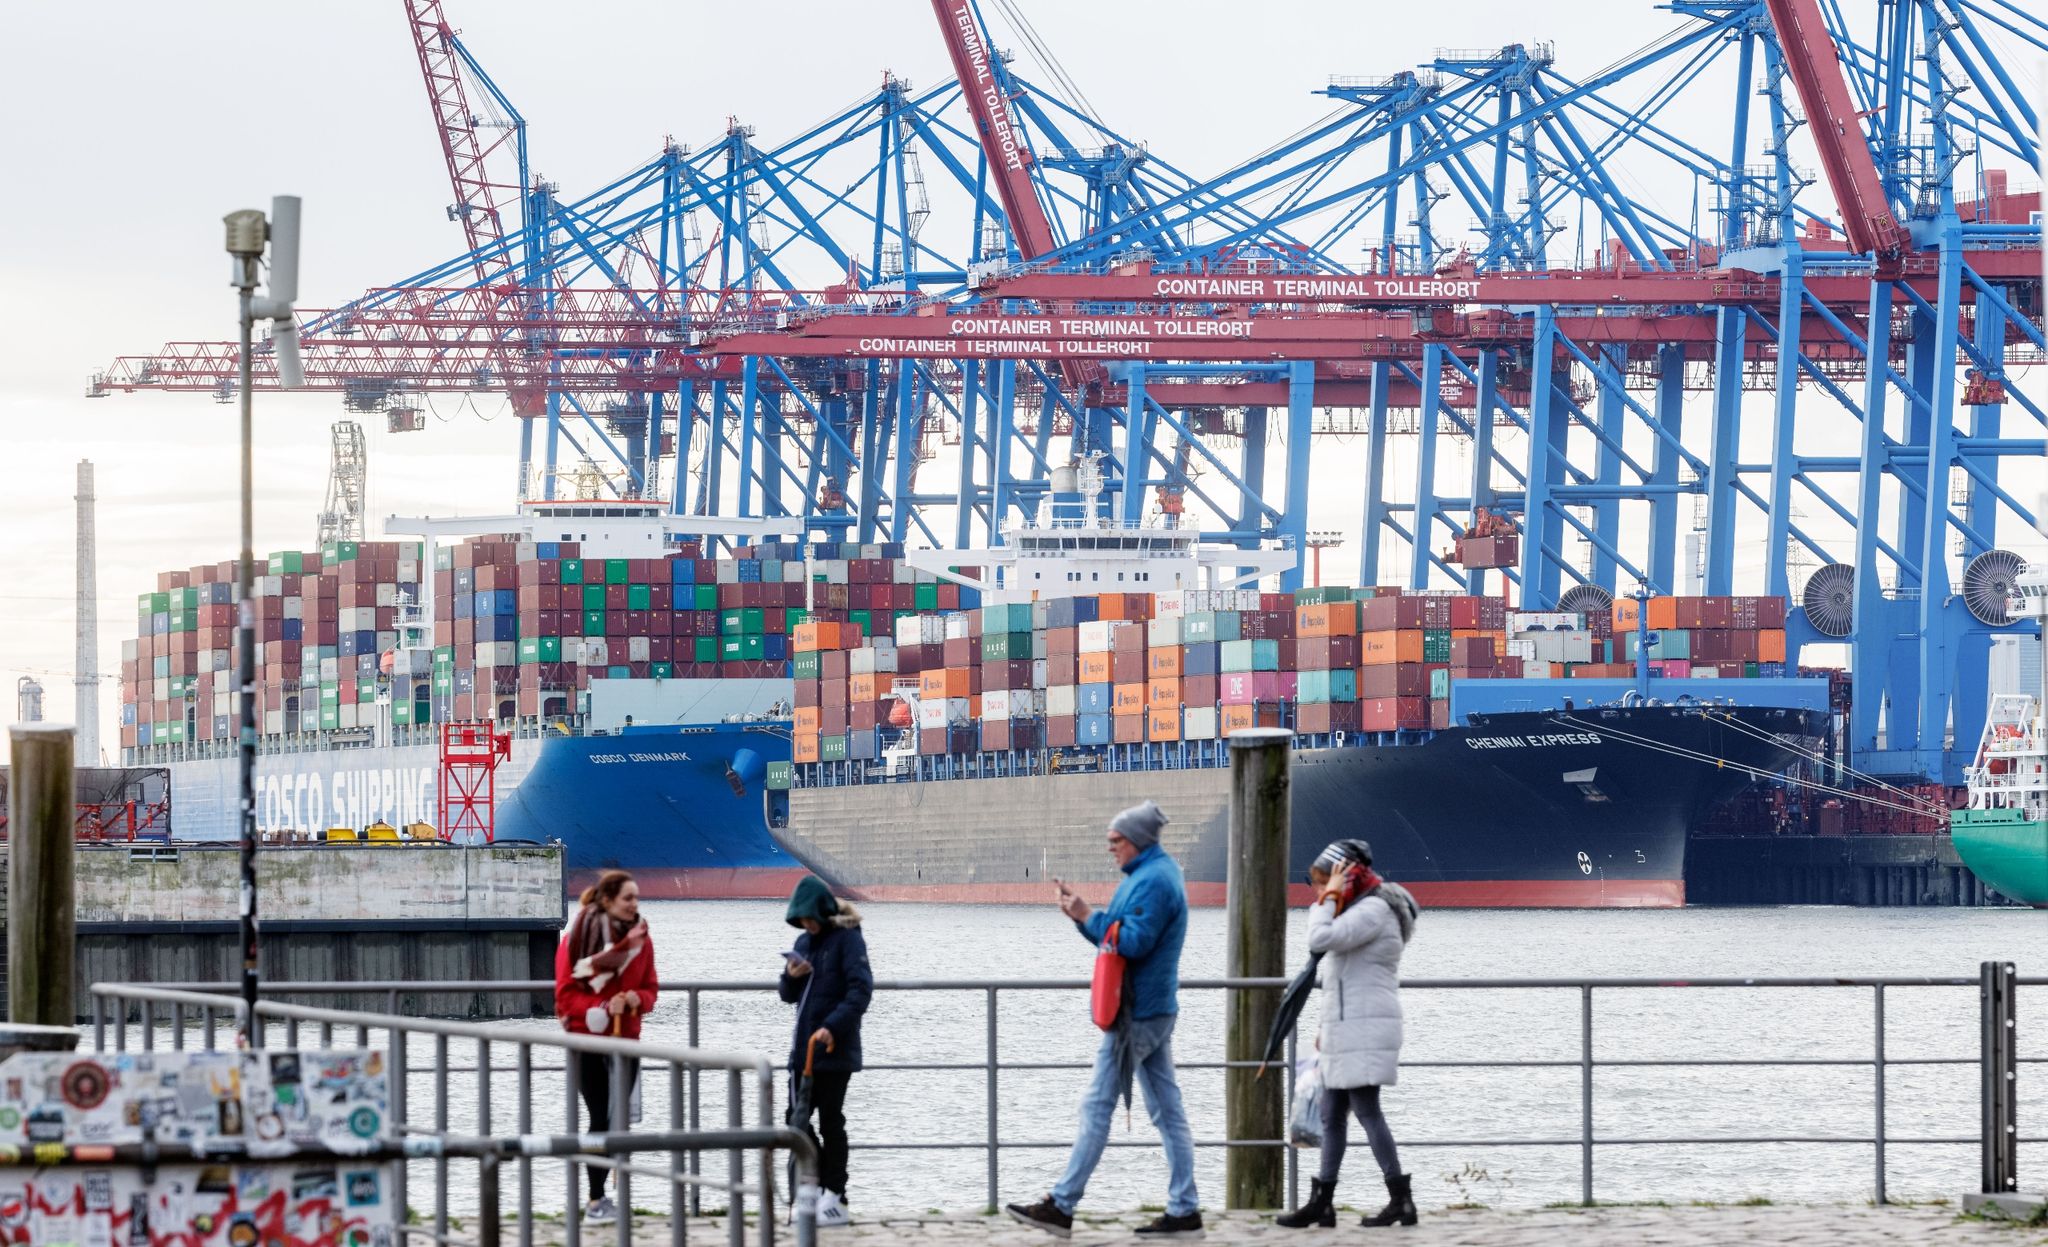 Containerschiffe liegen im Hamburger Hafen am Terminal Tollerort.